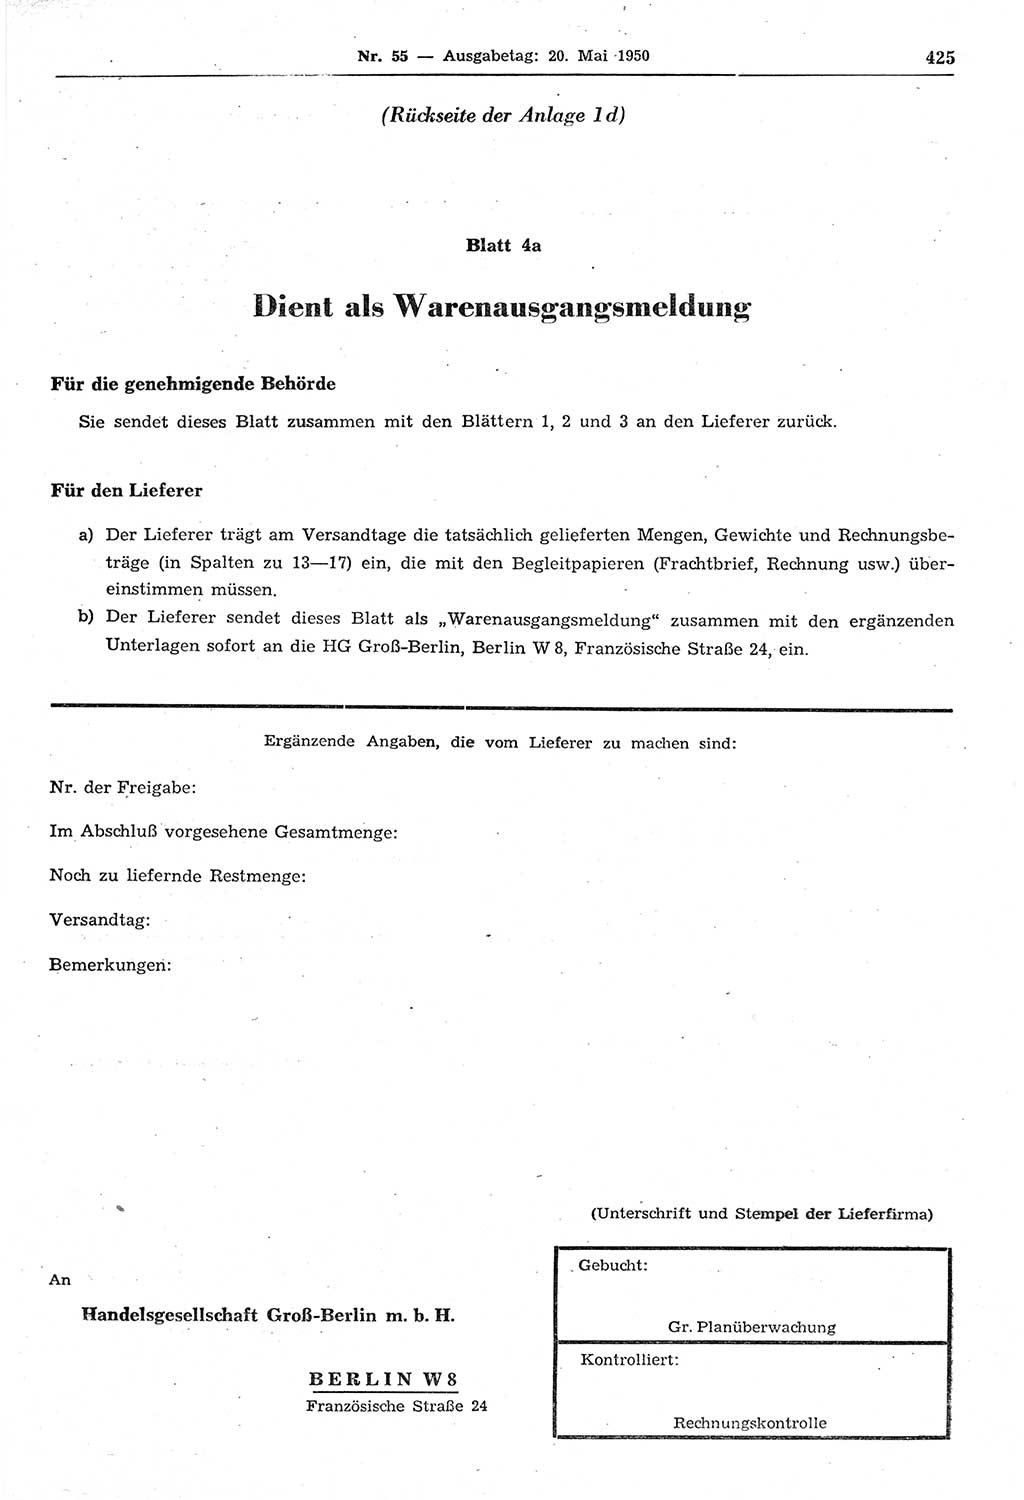 Gesetzblatt (GBl.) der Deutschen Demokratischen Republik (DDR) 1950, Seite 425 (GBl. DDR 1950, S. 425)